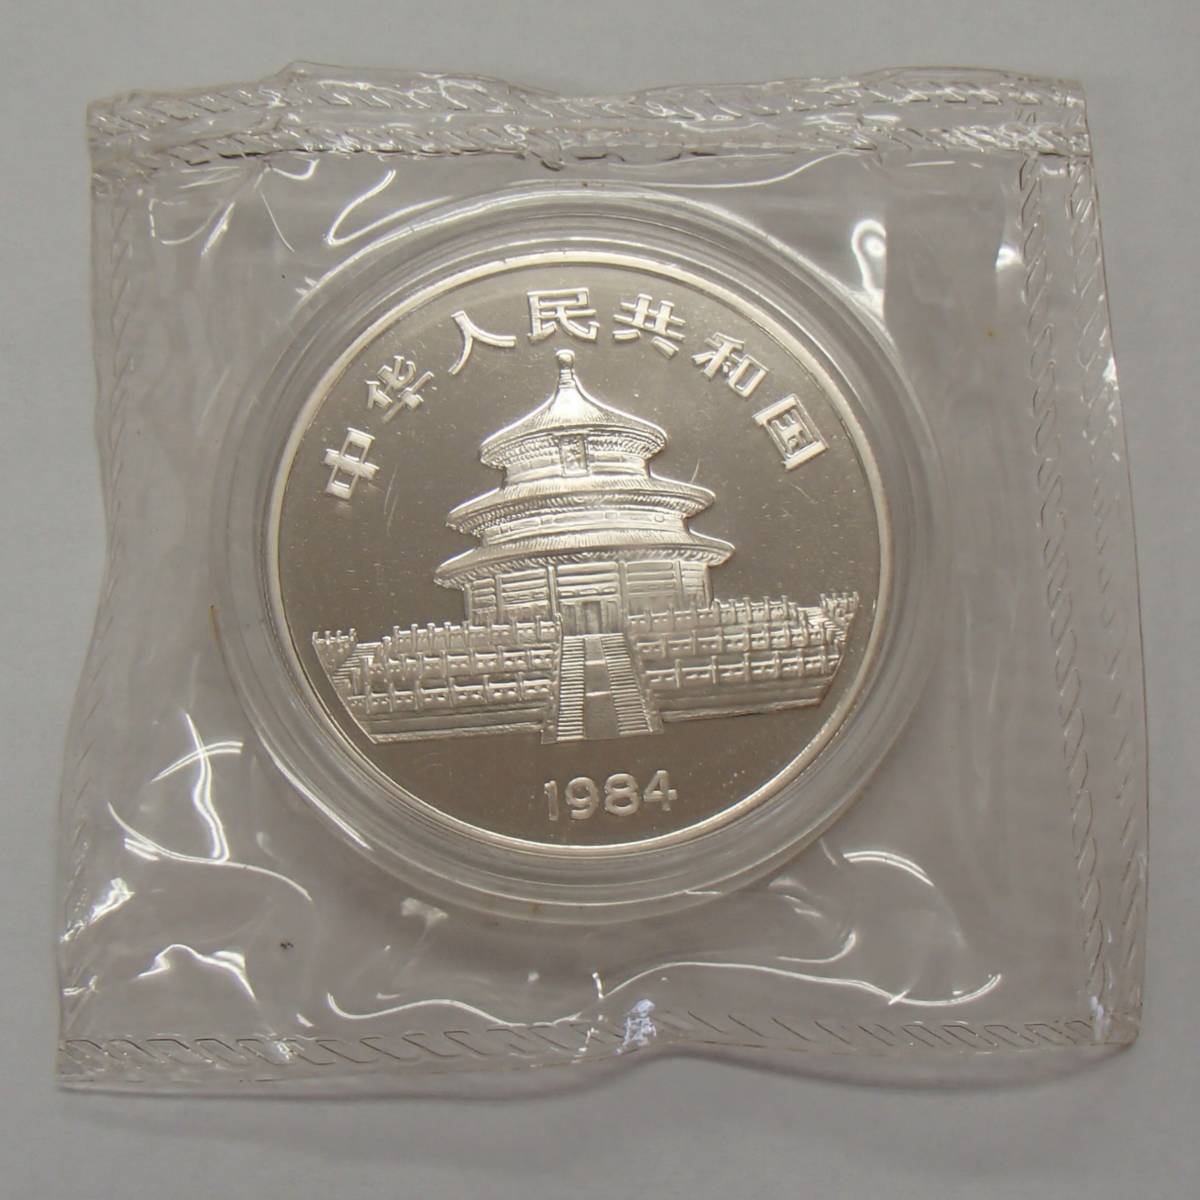 1984年 10元 パンダ 銀貨 中華人民共和国 パンダコイン シルバー